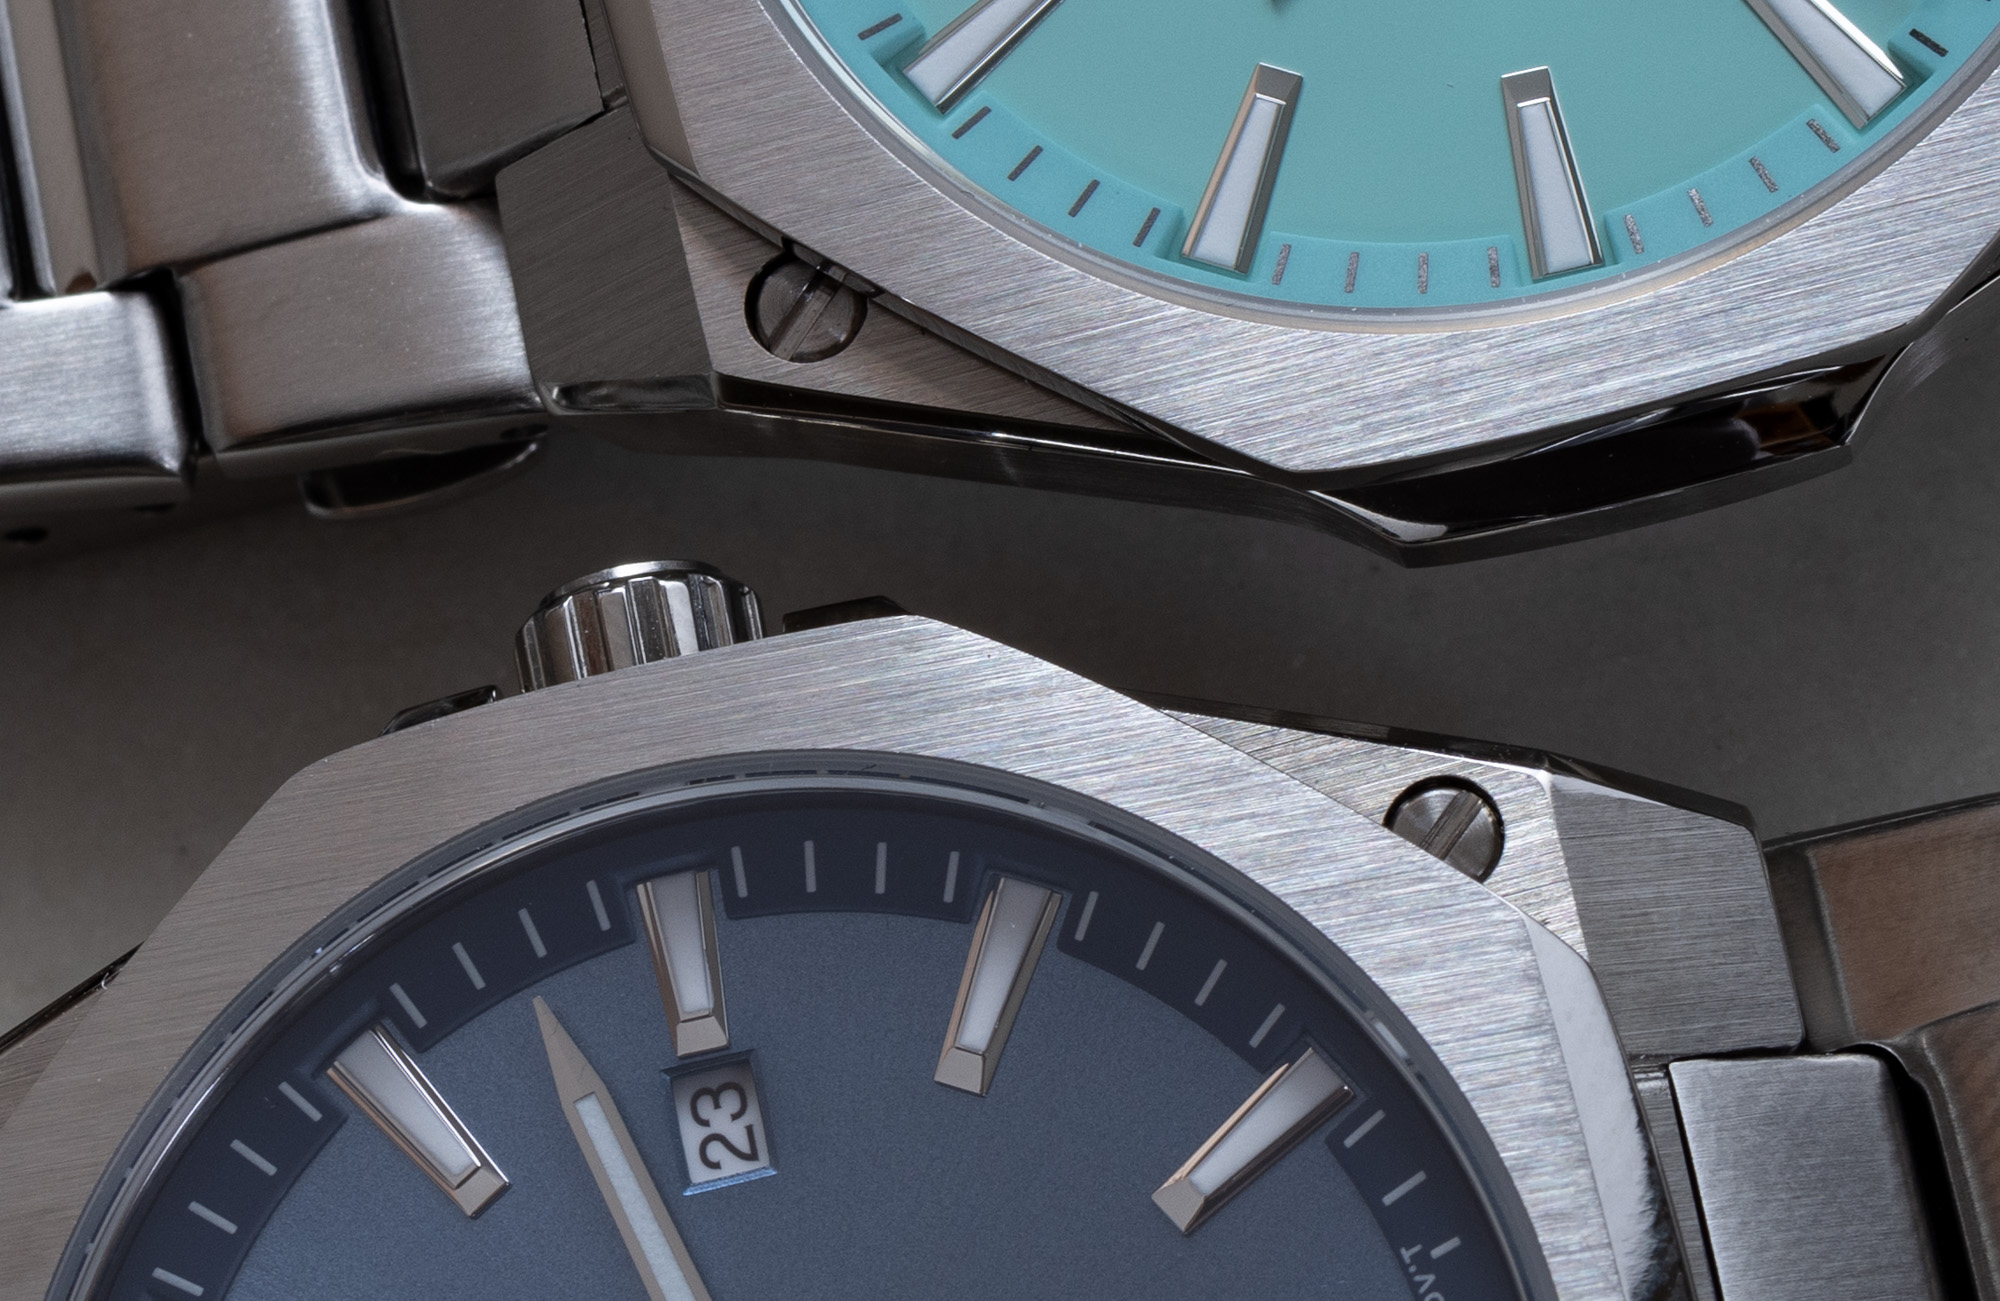 Наручные часы Casio Edifice Slim EFRS108D-2AV и EFRS108D-2BV стоимостью $170